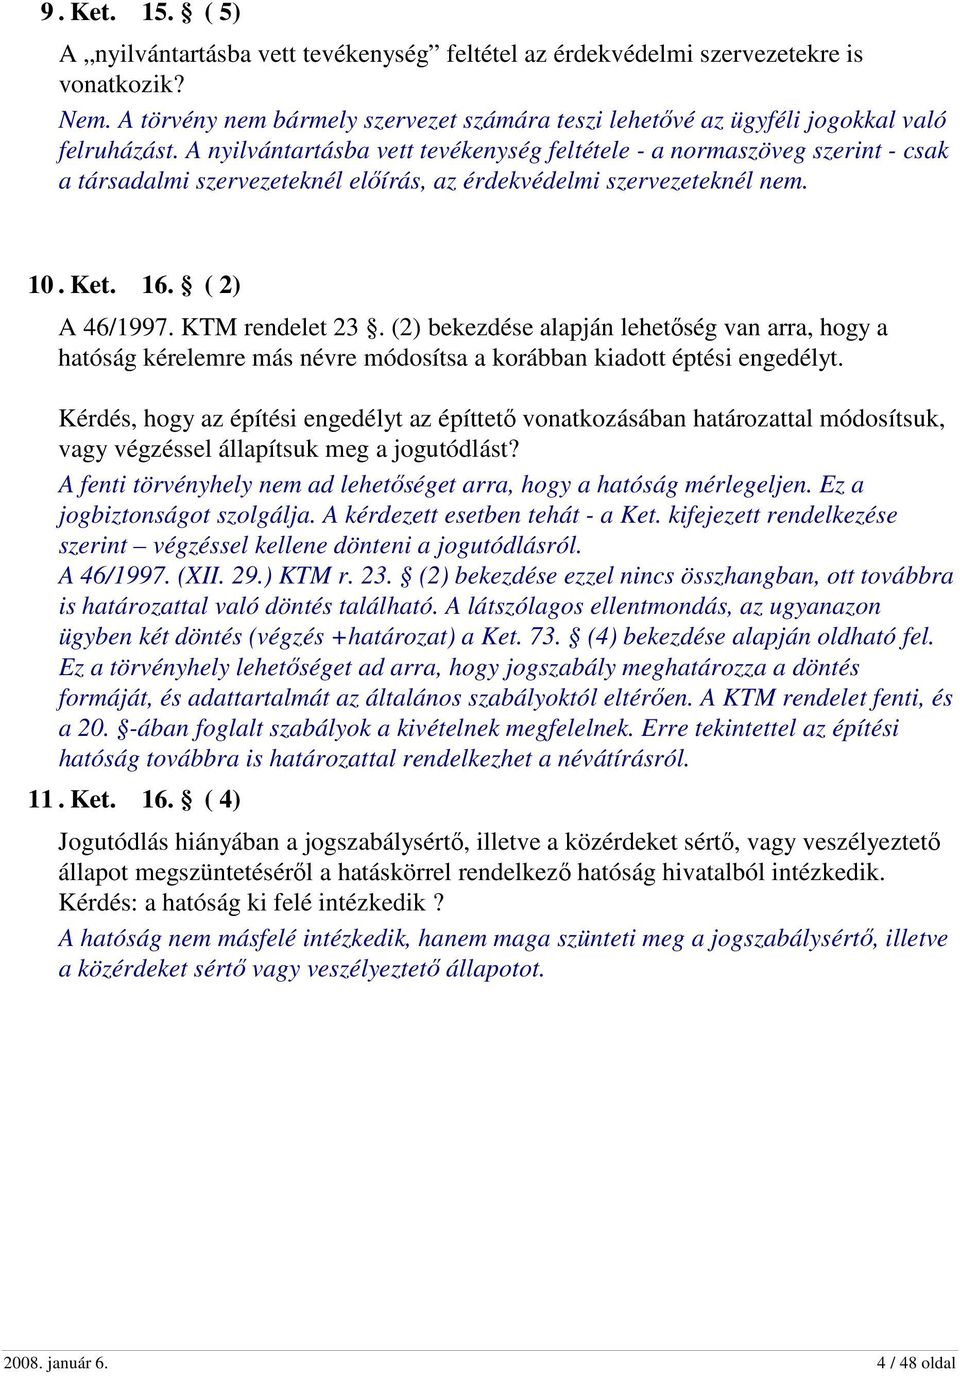 A nyilvántartásba vett tevékenység feltétele - a normaszöveg szerint - csak a társadalmi szervezeteknél előírás, az érdekvédelmi szervezeteknél nem. 10. Ket. 16. ( 2) A 46/1997. KTM rendelet 23.